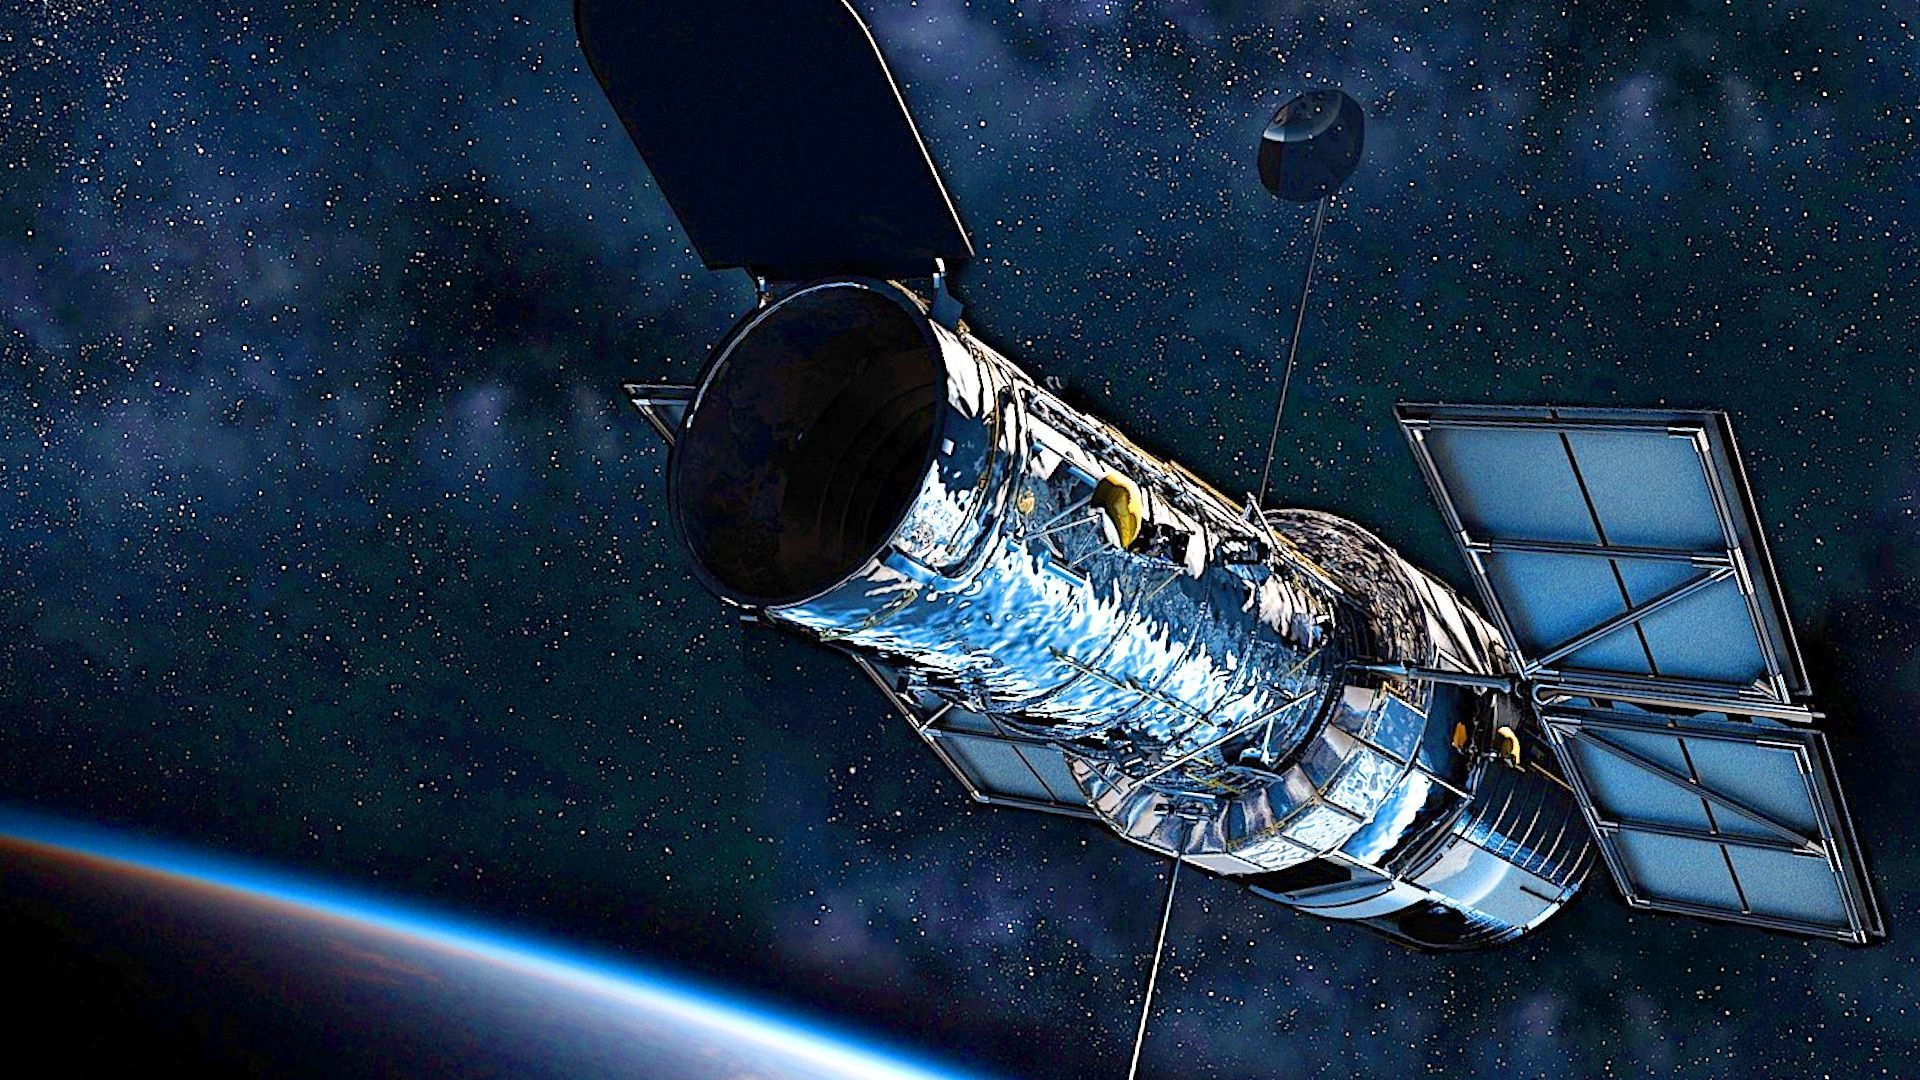  Das Beste Der Welt Hintergrundbild 1920x1080. Die Spektakulären NASA Fotos Vom Weltraum Teleskop Könnt Ihr Ideal Als Wallpaper Nutzen